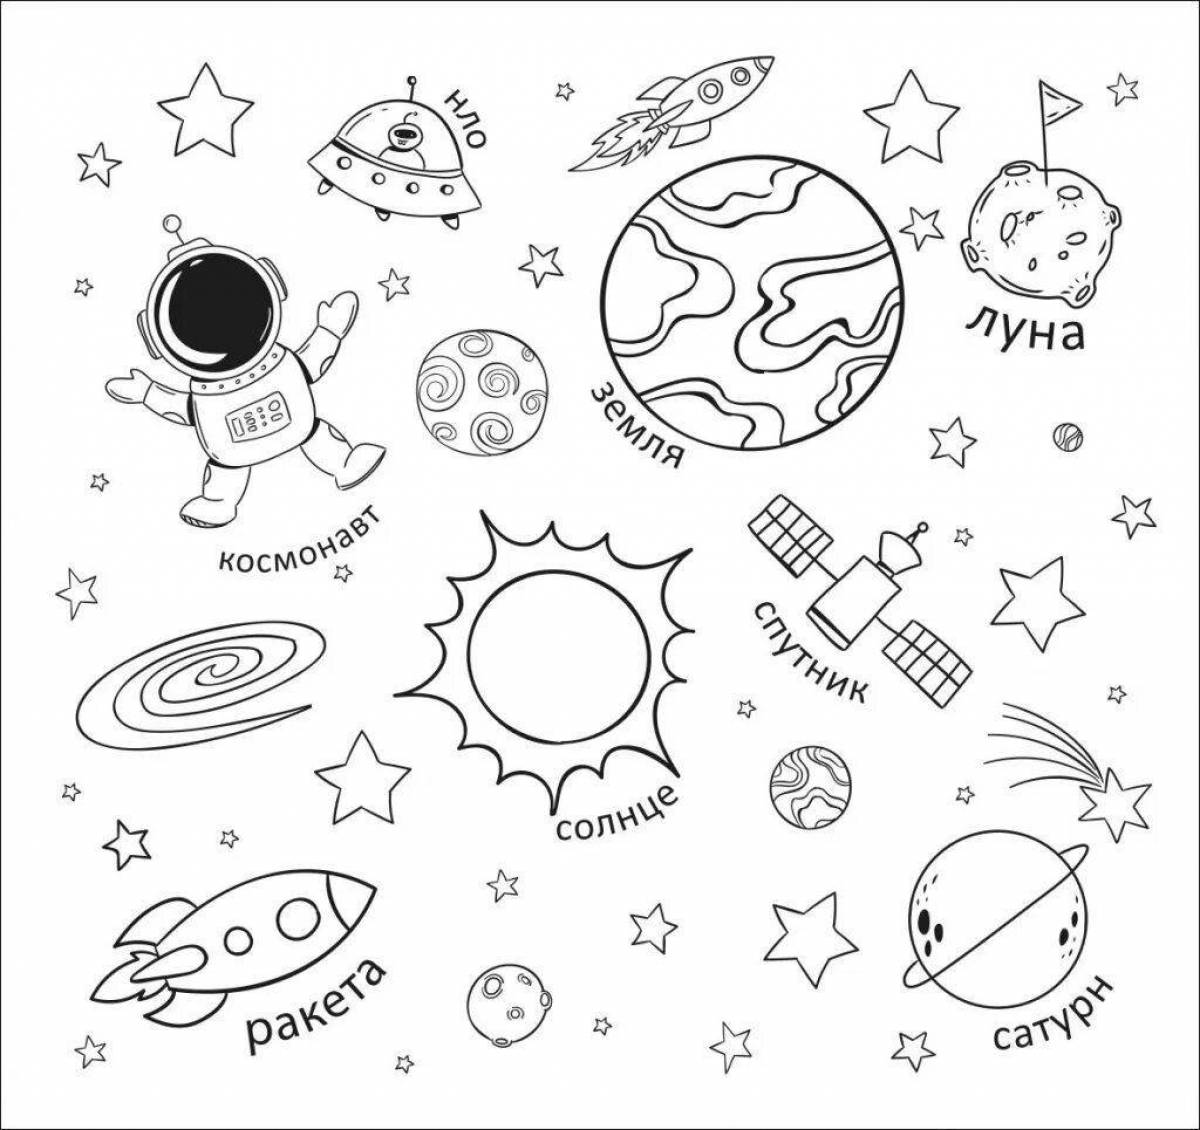 Планеты картинки для детей раскраски. Космос раскраска для детей. Раскраска. В космосе. Раскраска космос и планеты для детей. Космические раскраски для детей.